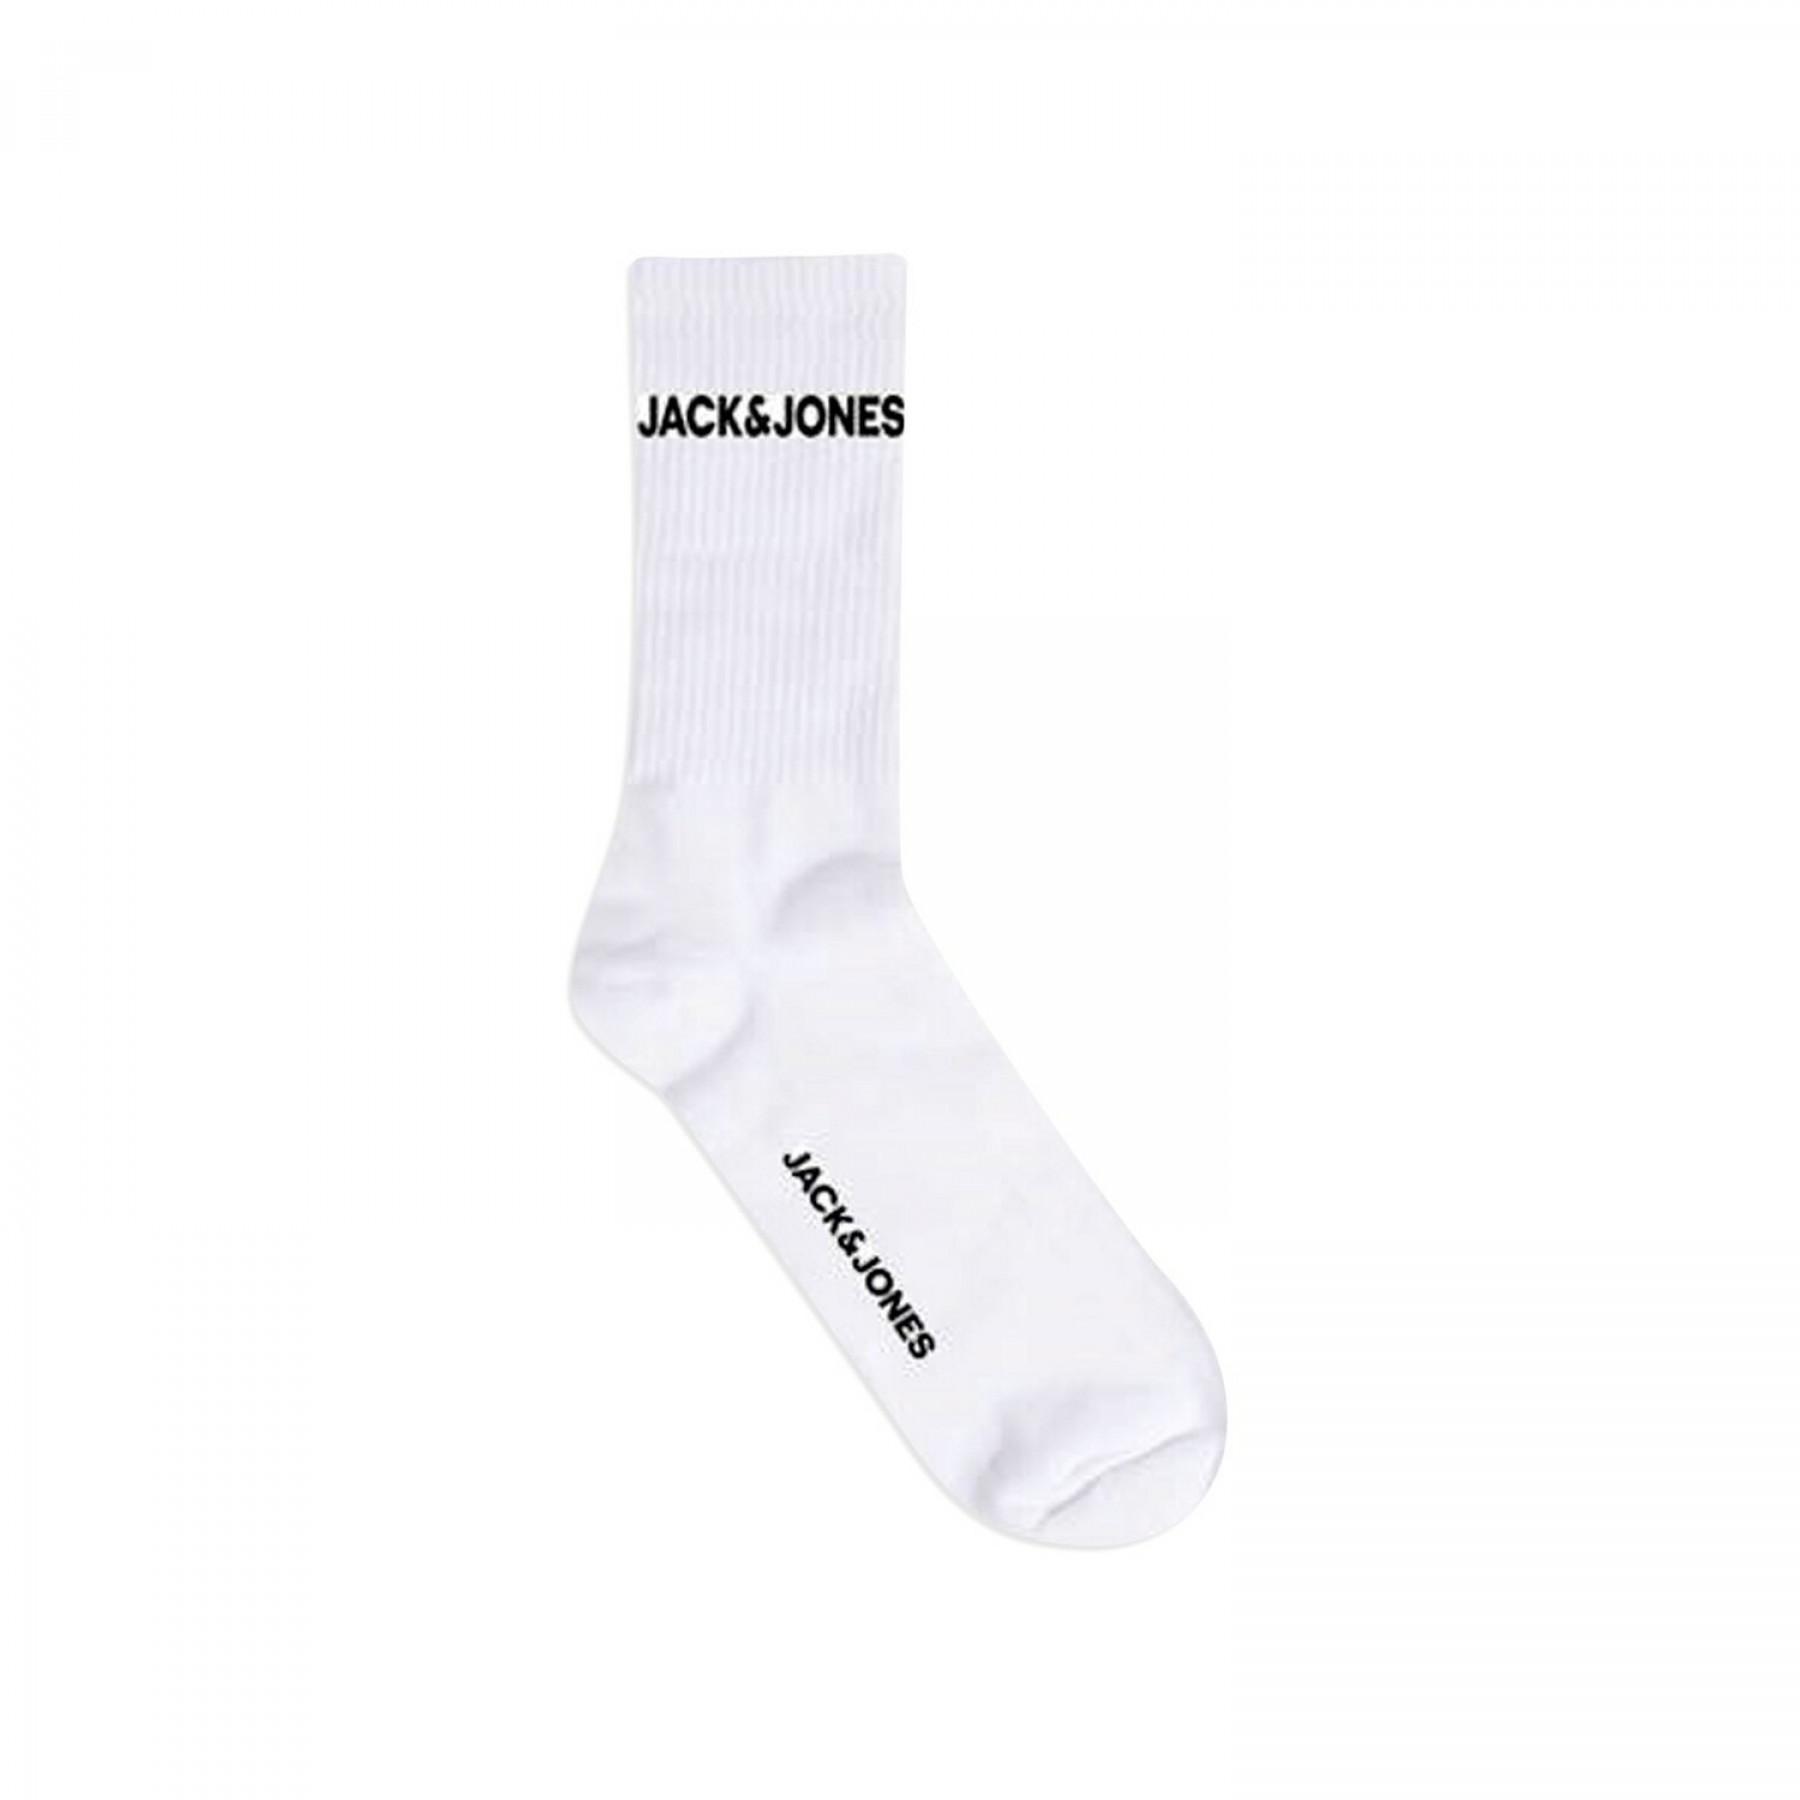 Satz von 5 Socken Jack & Jones basic tennis